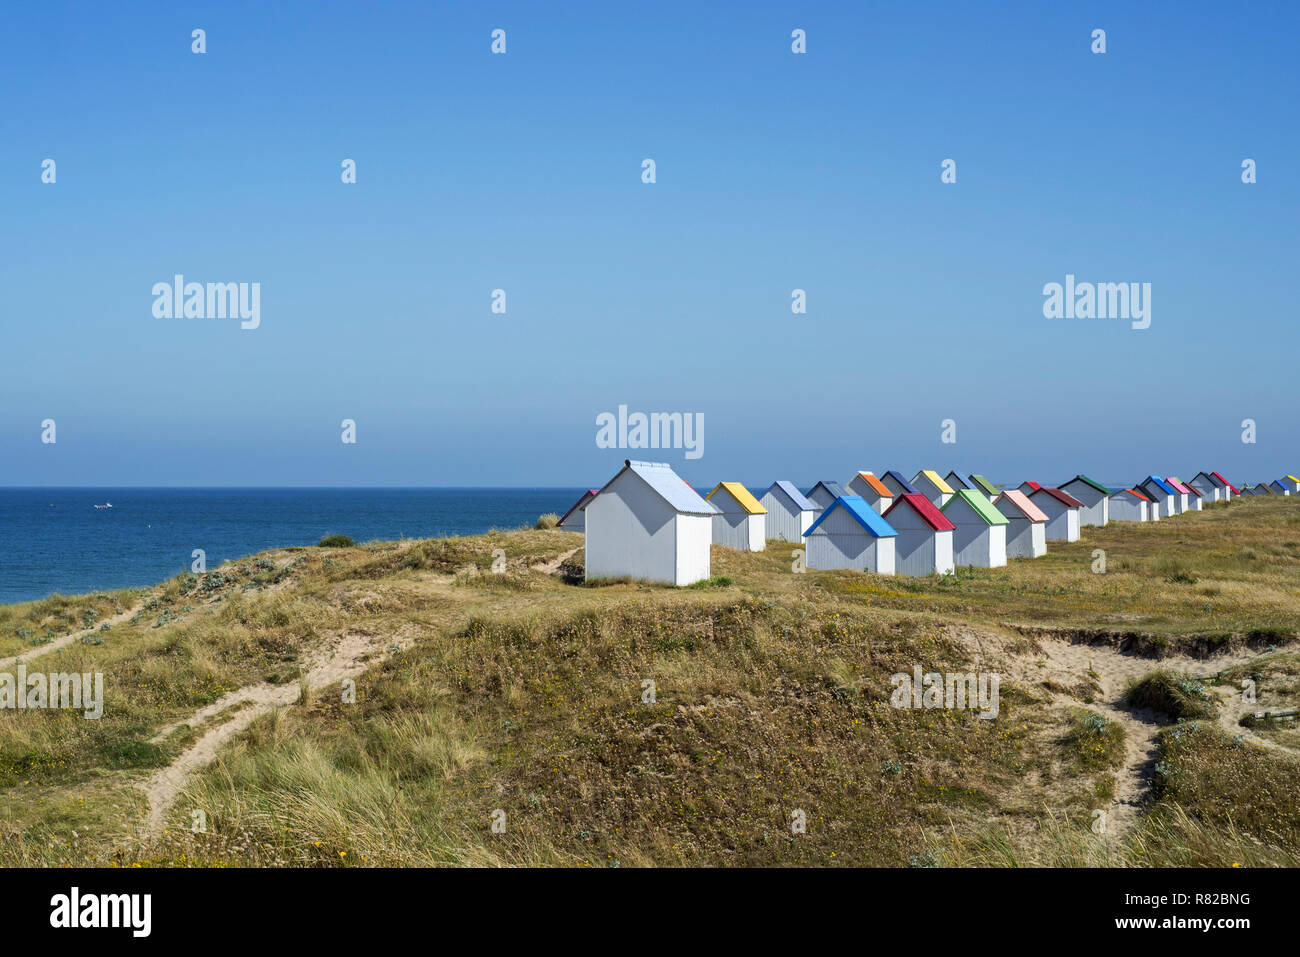 Rangée de cabines de plage colorées dans les dunes à Gouville-sur-Mer, Basse-normandie, France Banque D'Images